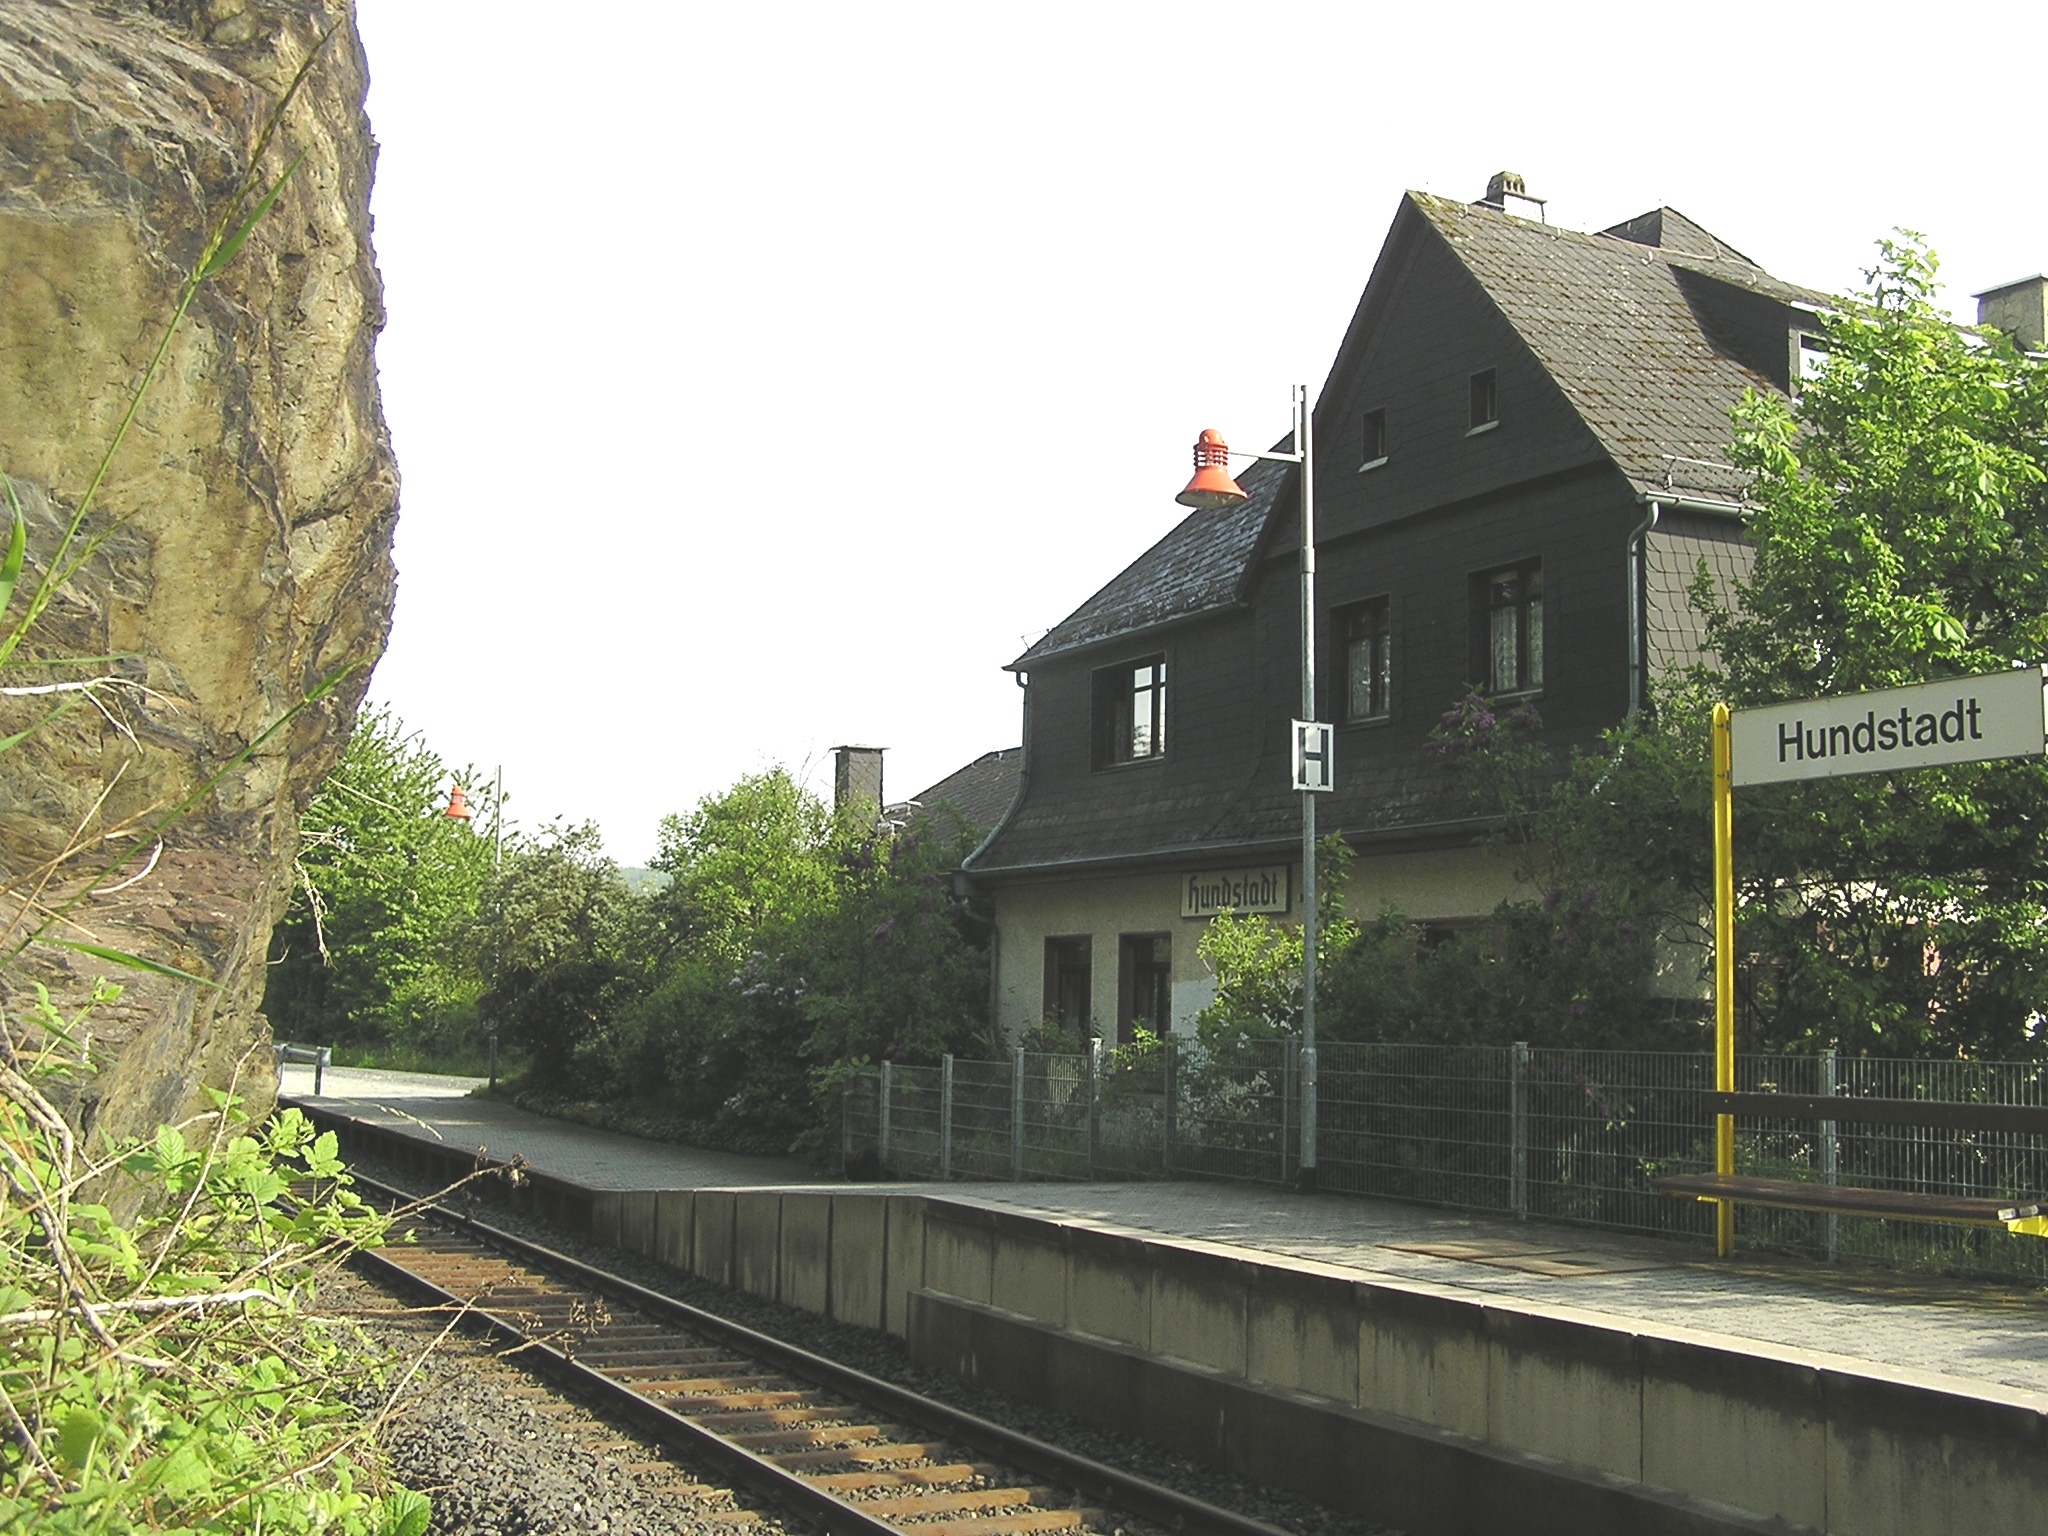 Bahnhof Hundstadt vom Fels aus gesehen - nicht ganz ungefährlich, da rutschig und Teil der Gleisanlage...